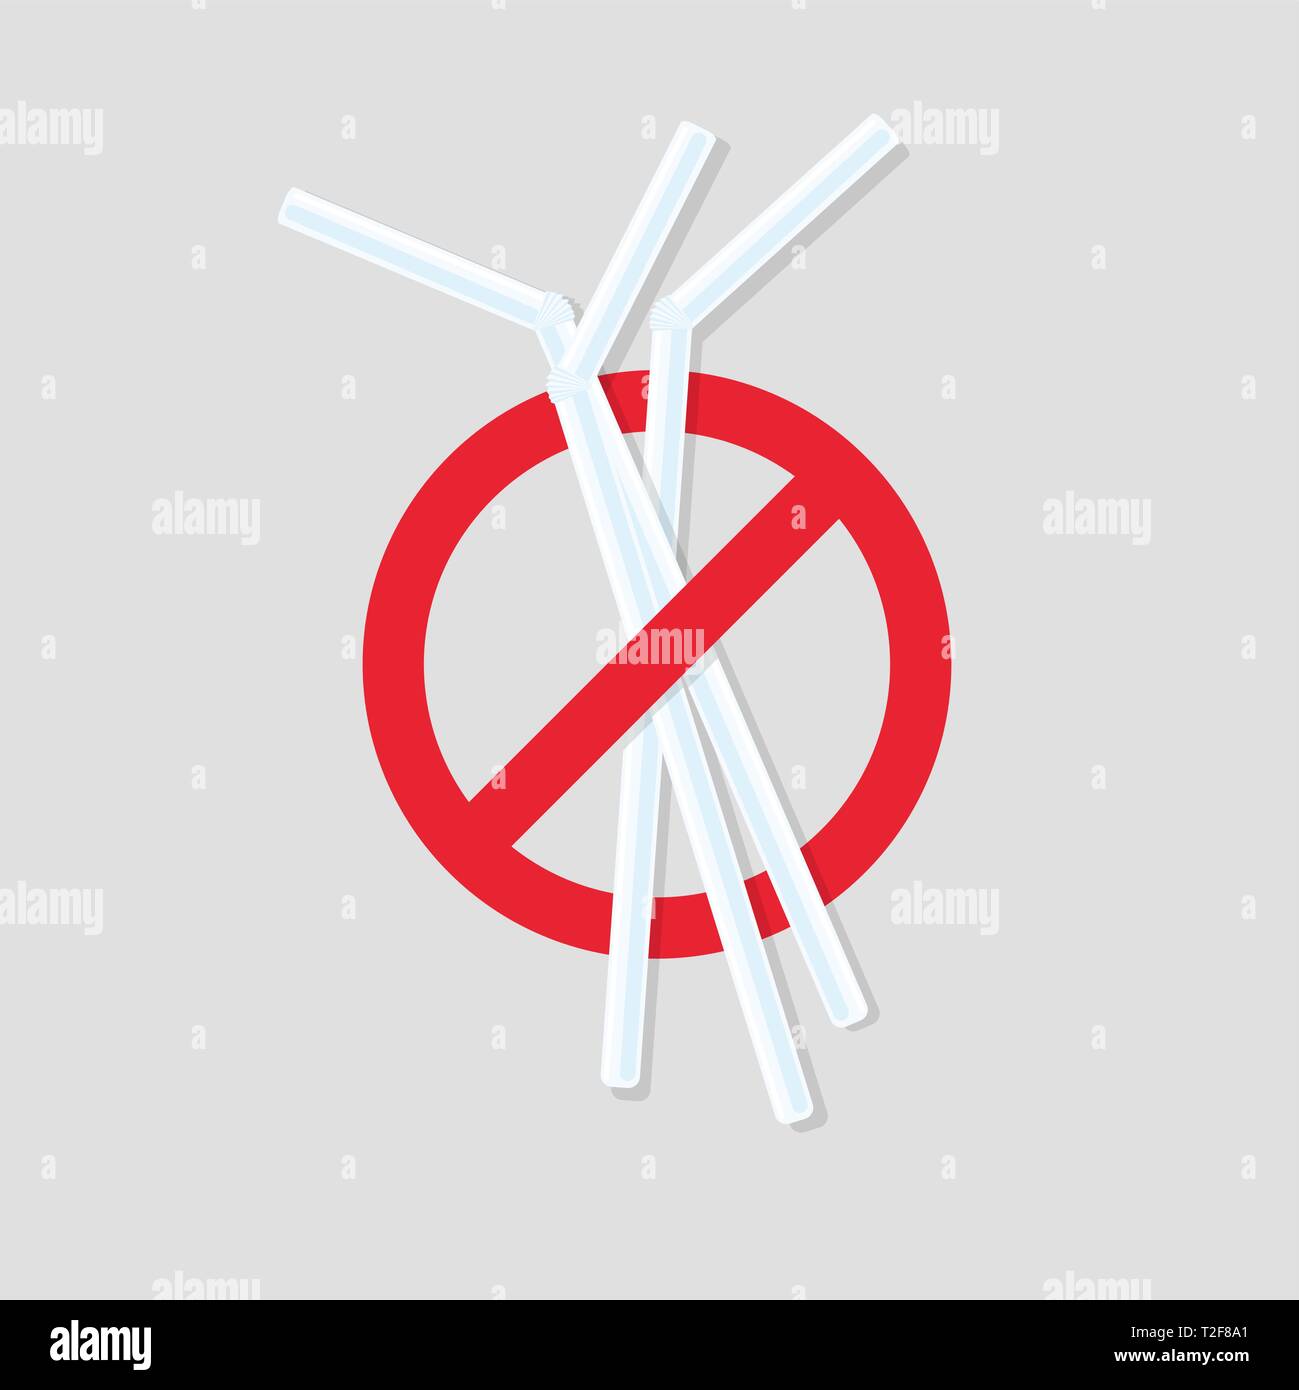 No plastic straws icon. Stock Vector